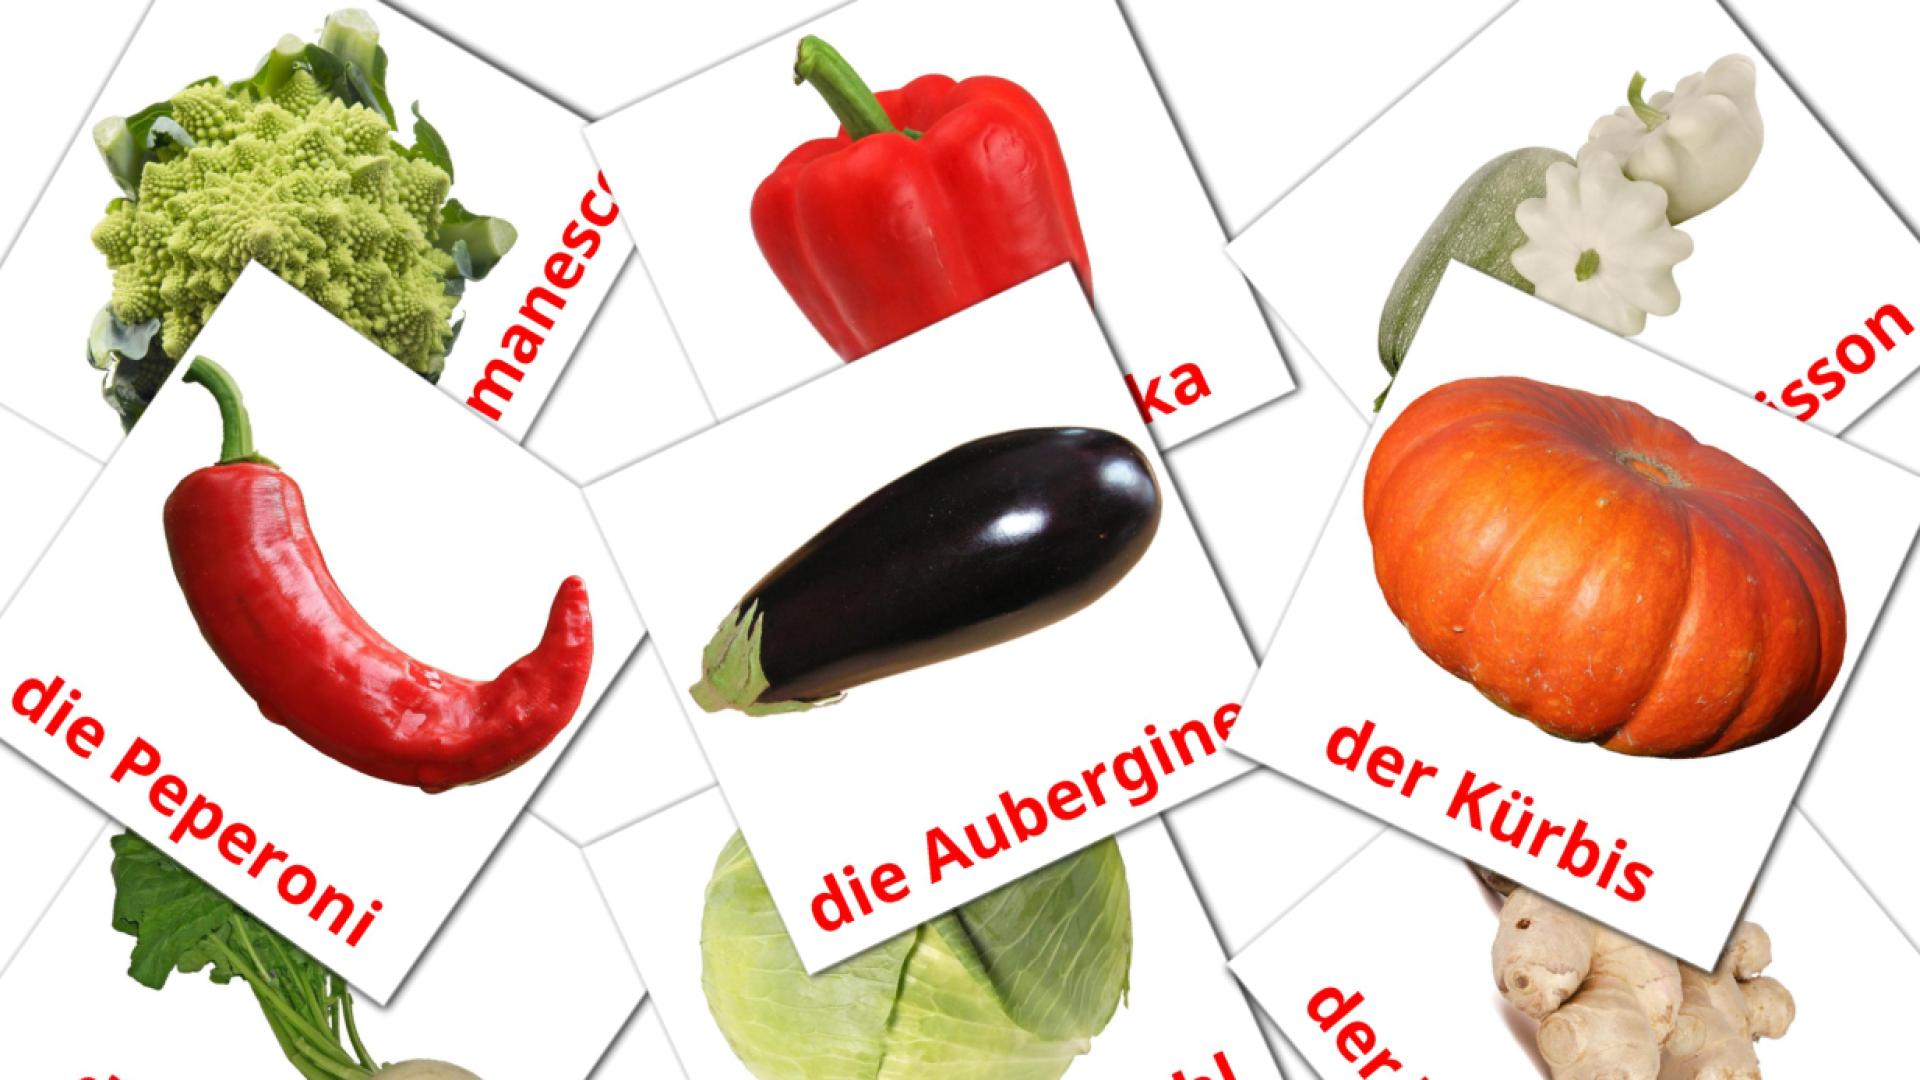 Verduras - tarjetas de vocabulario en alemán